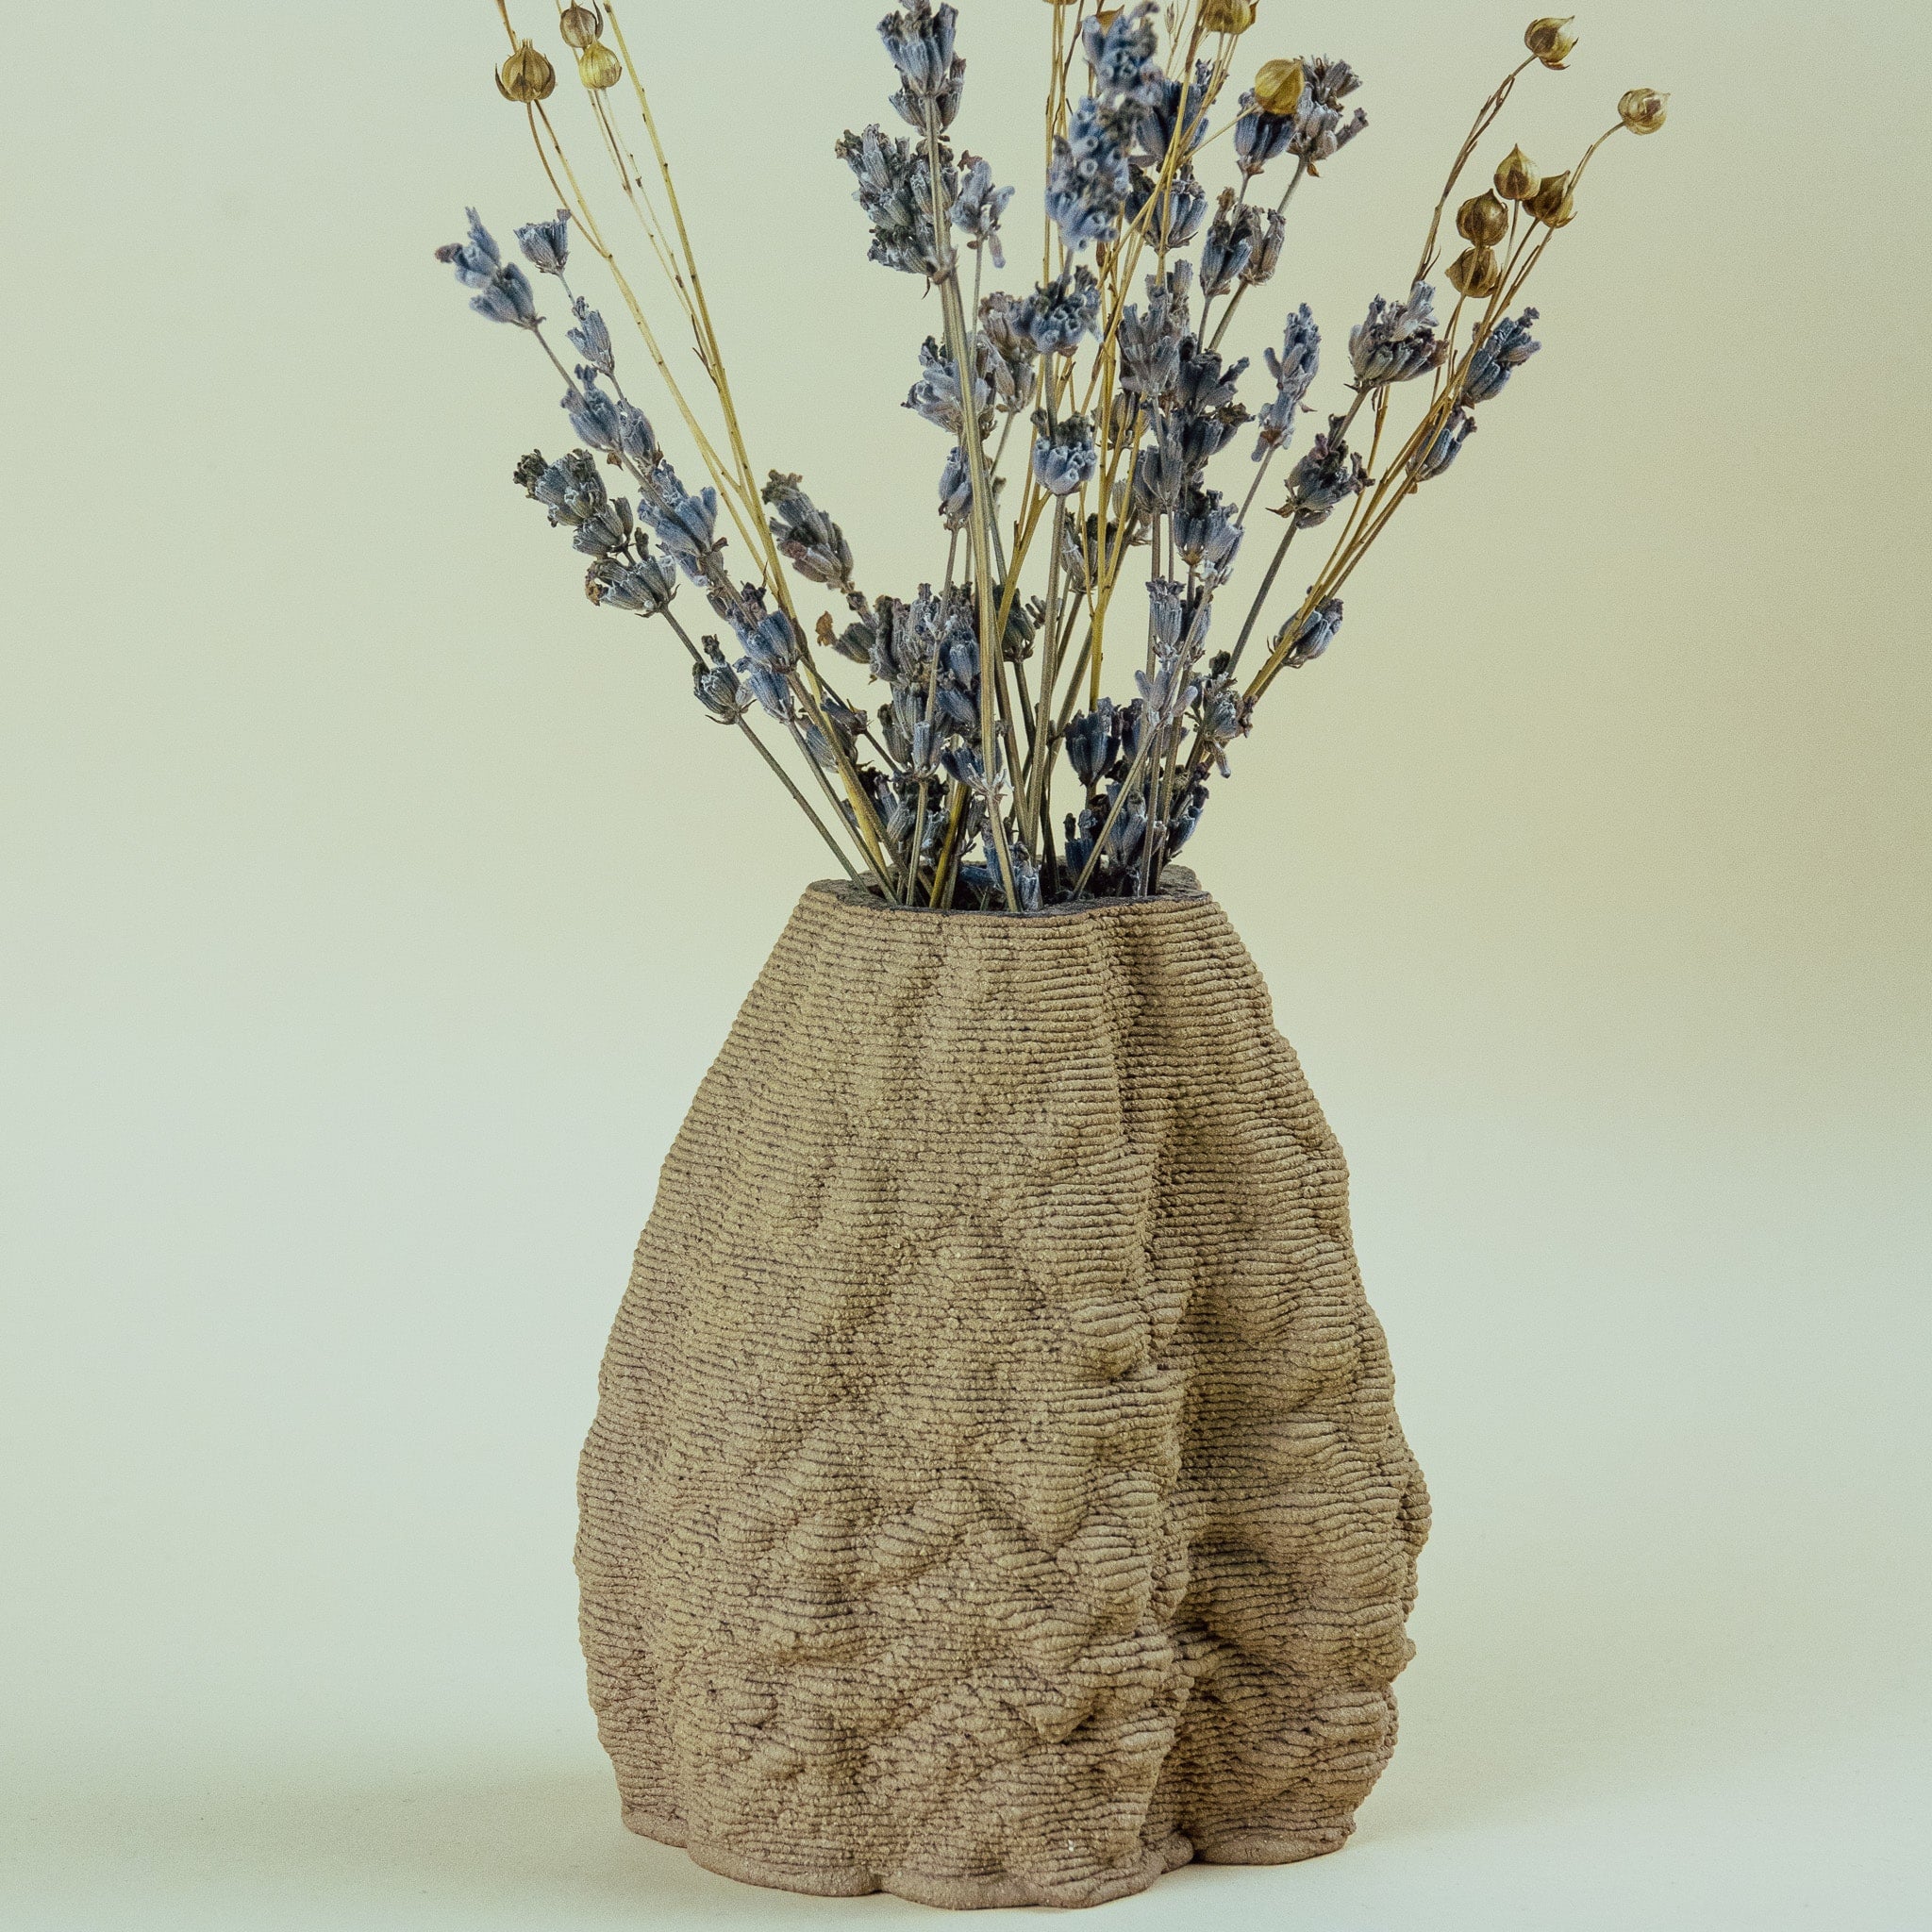 Waqachi Vase - 3D Printed Ceramic Vase